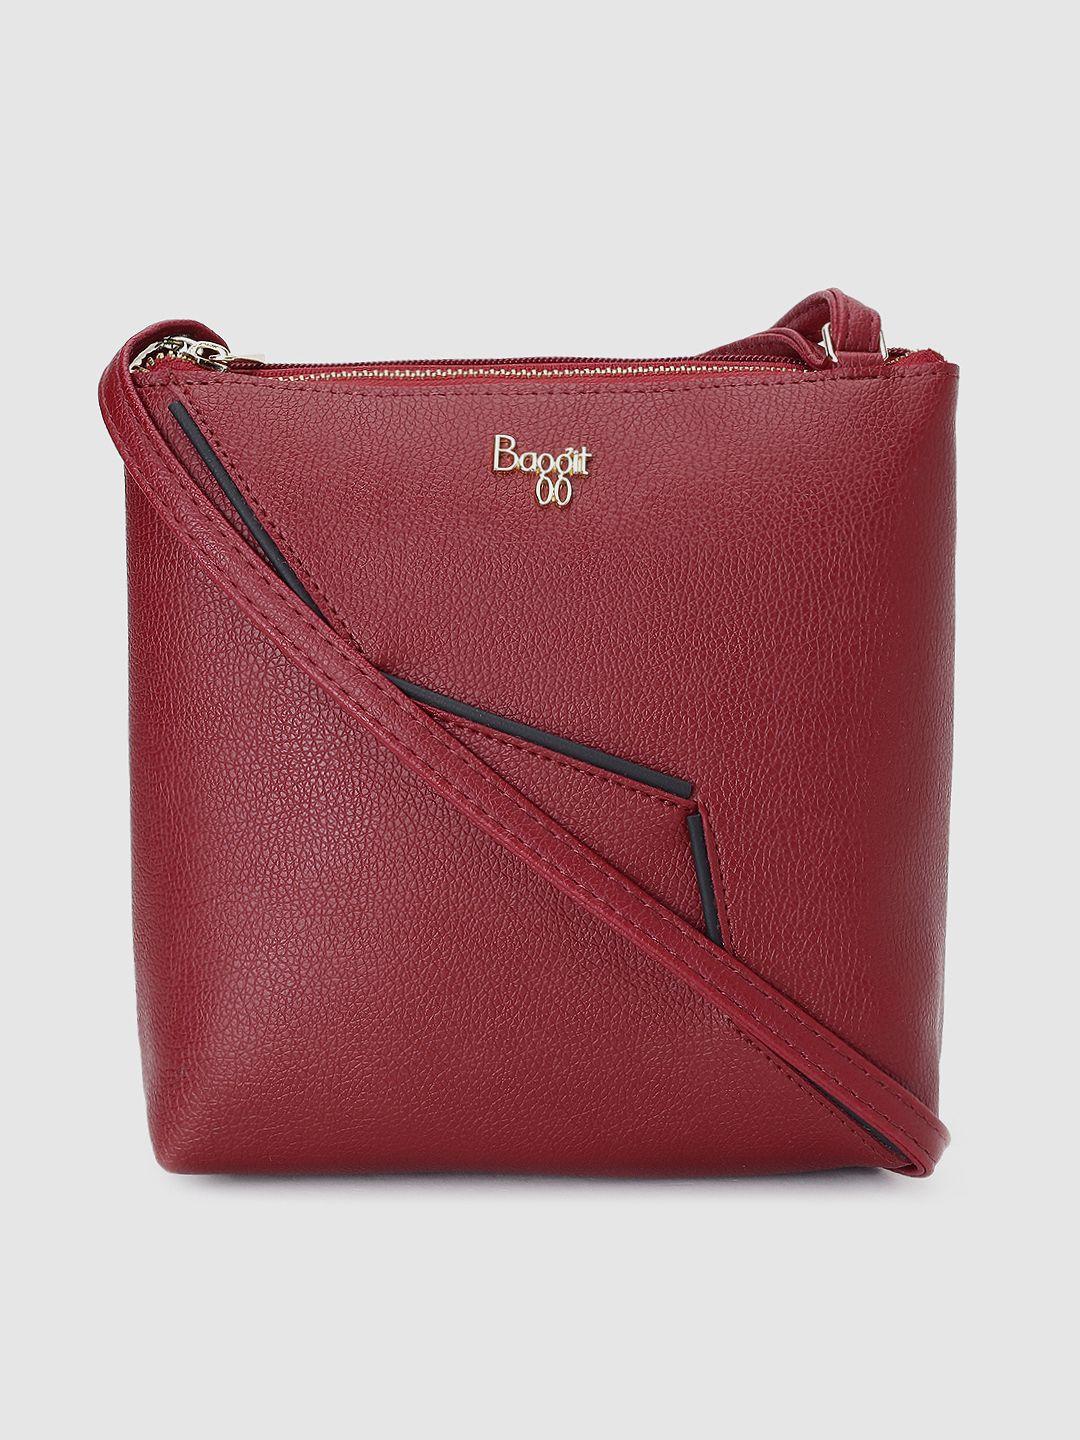 baggit maroon textured sling bag